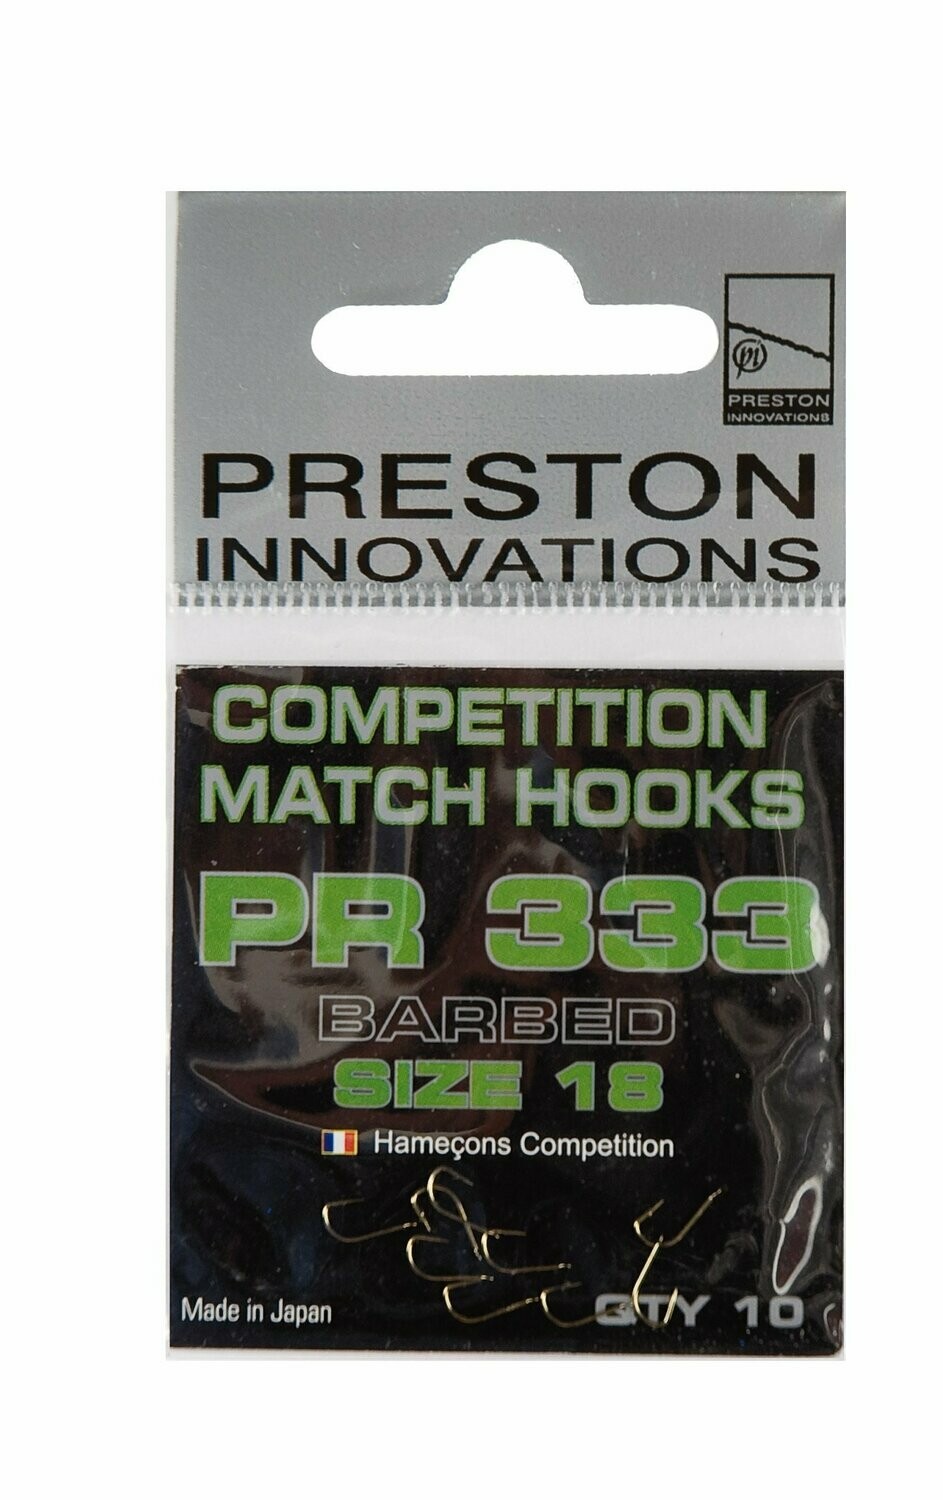 Preston Innovatons PR333 Größe 18